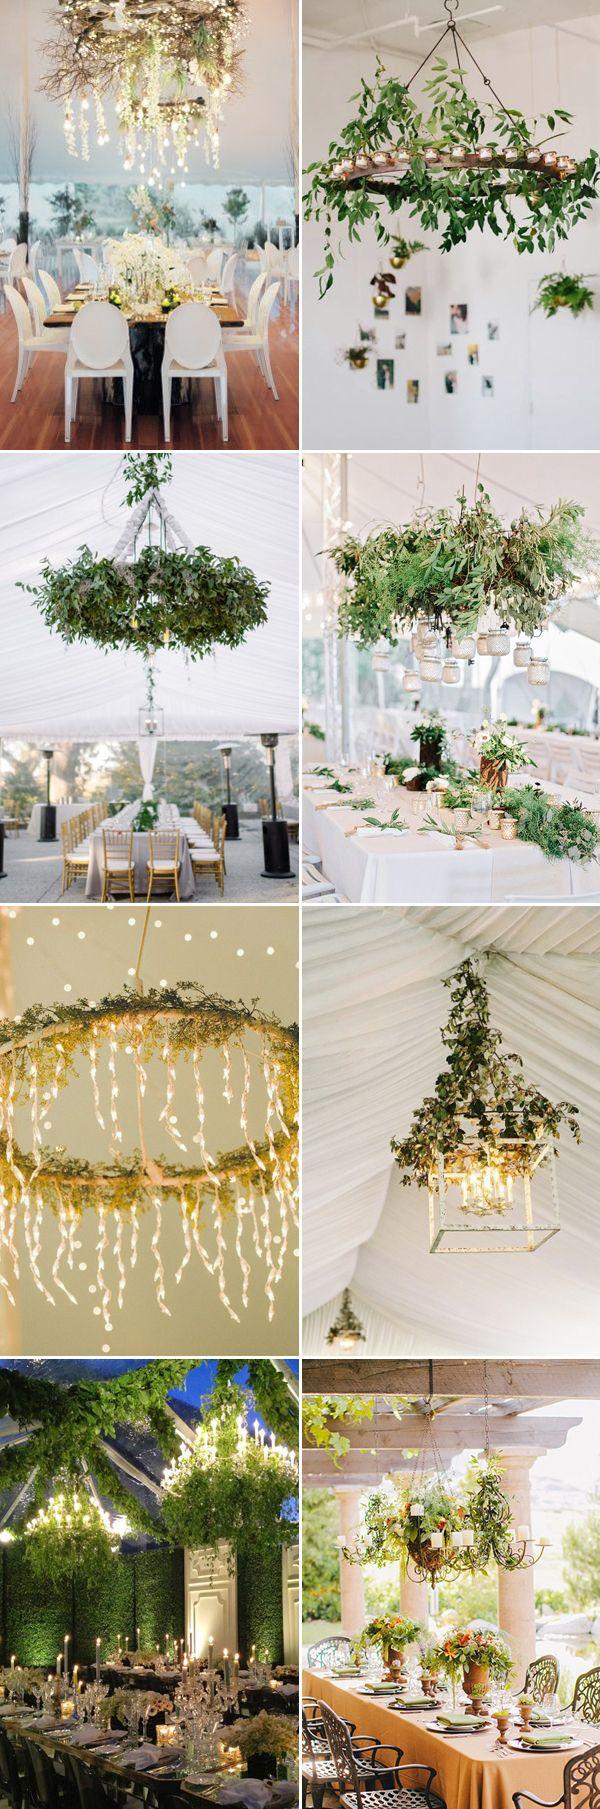 Свадьба - Fairytale Lighting! 25 Romantic Wedding Chandelier Ideas